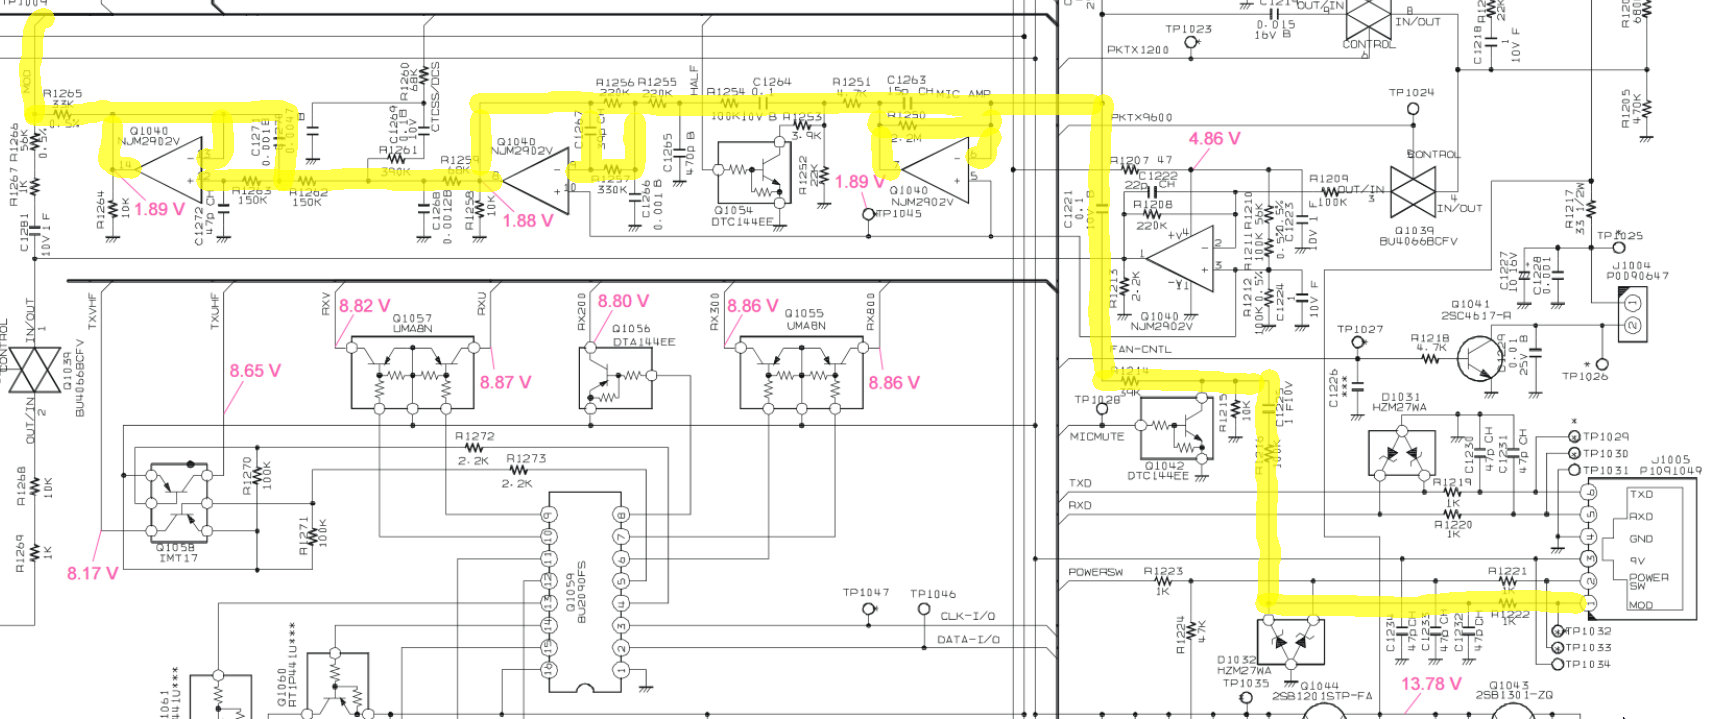 Yaesu FT-7900r transceiver schematics